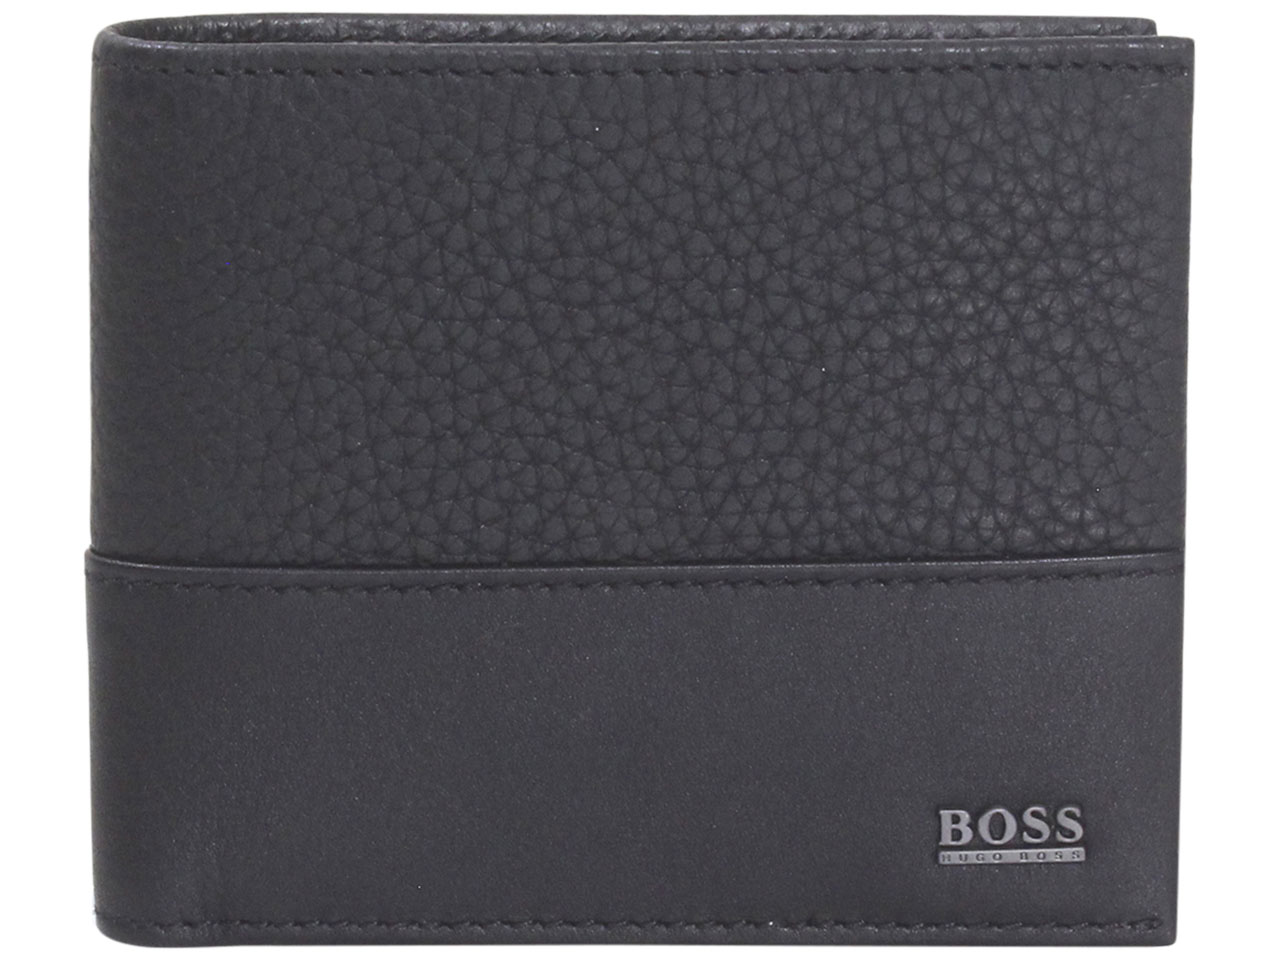 Hugo Boss Wallet | Billfold Wallet & Cardholder | HOF